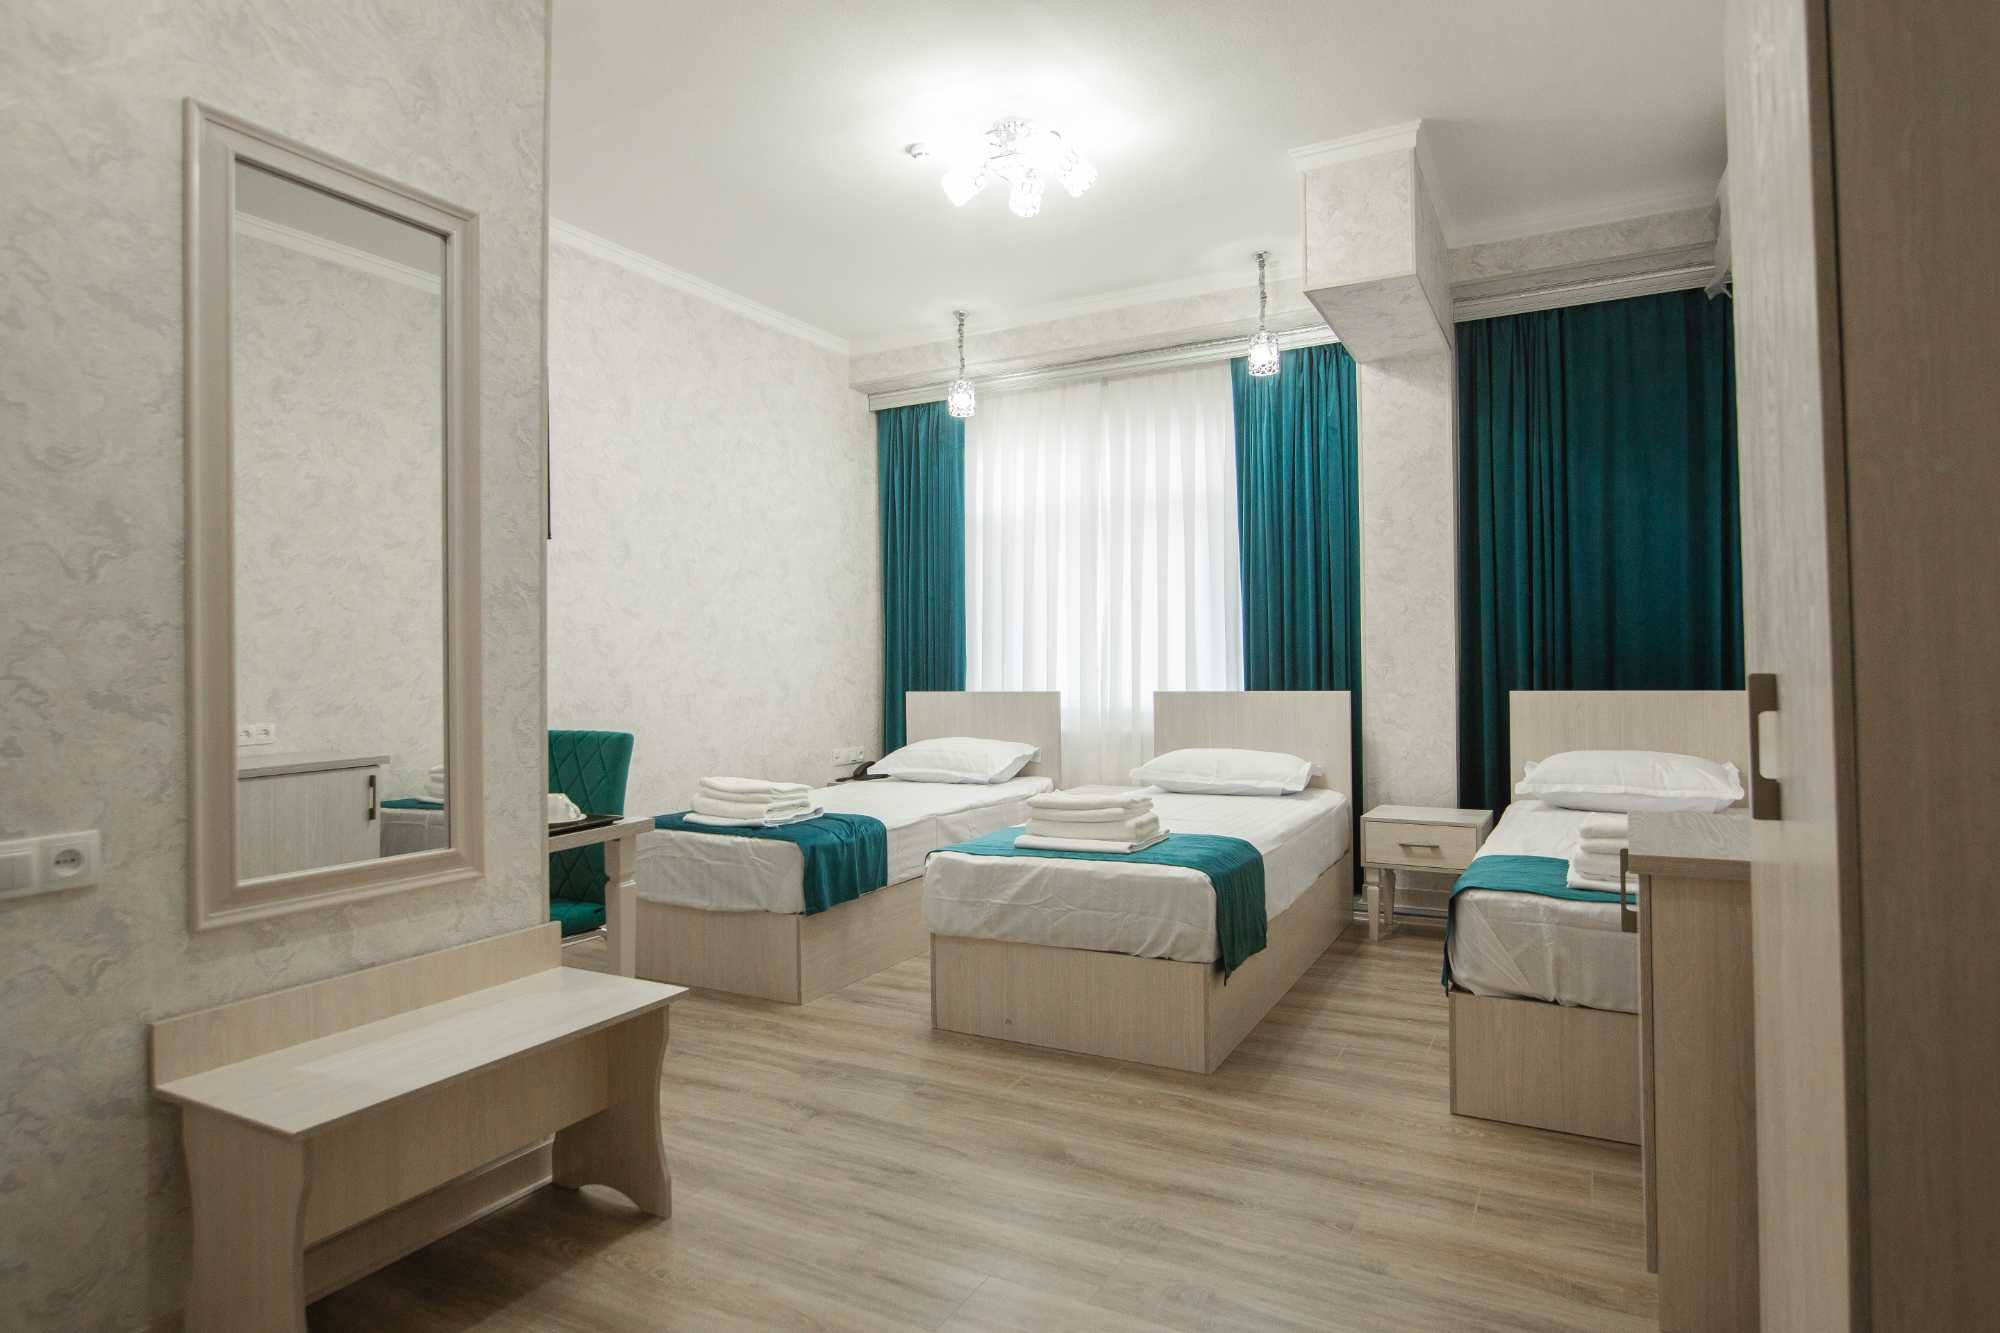 Уютная, новая гостиница "MERCURI-MERIDIAN" в центре города. Бухара.